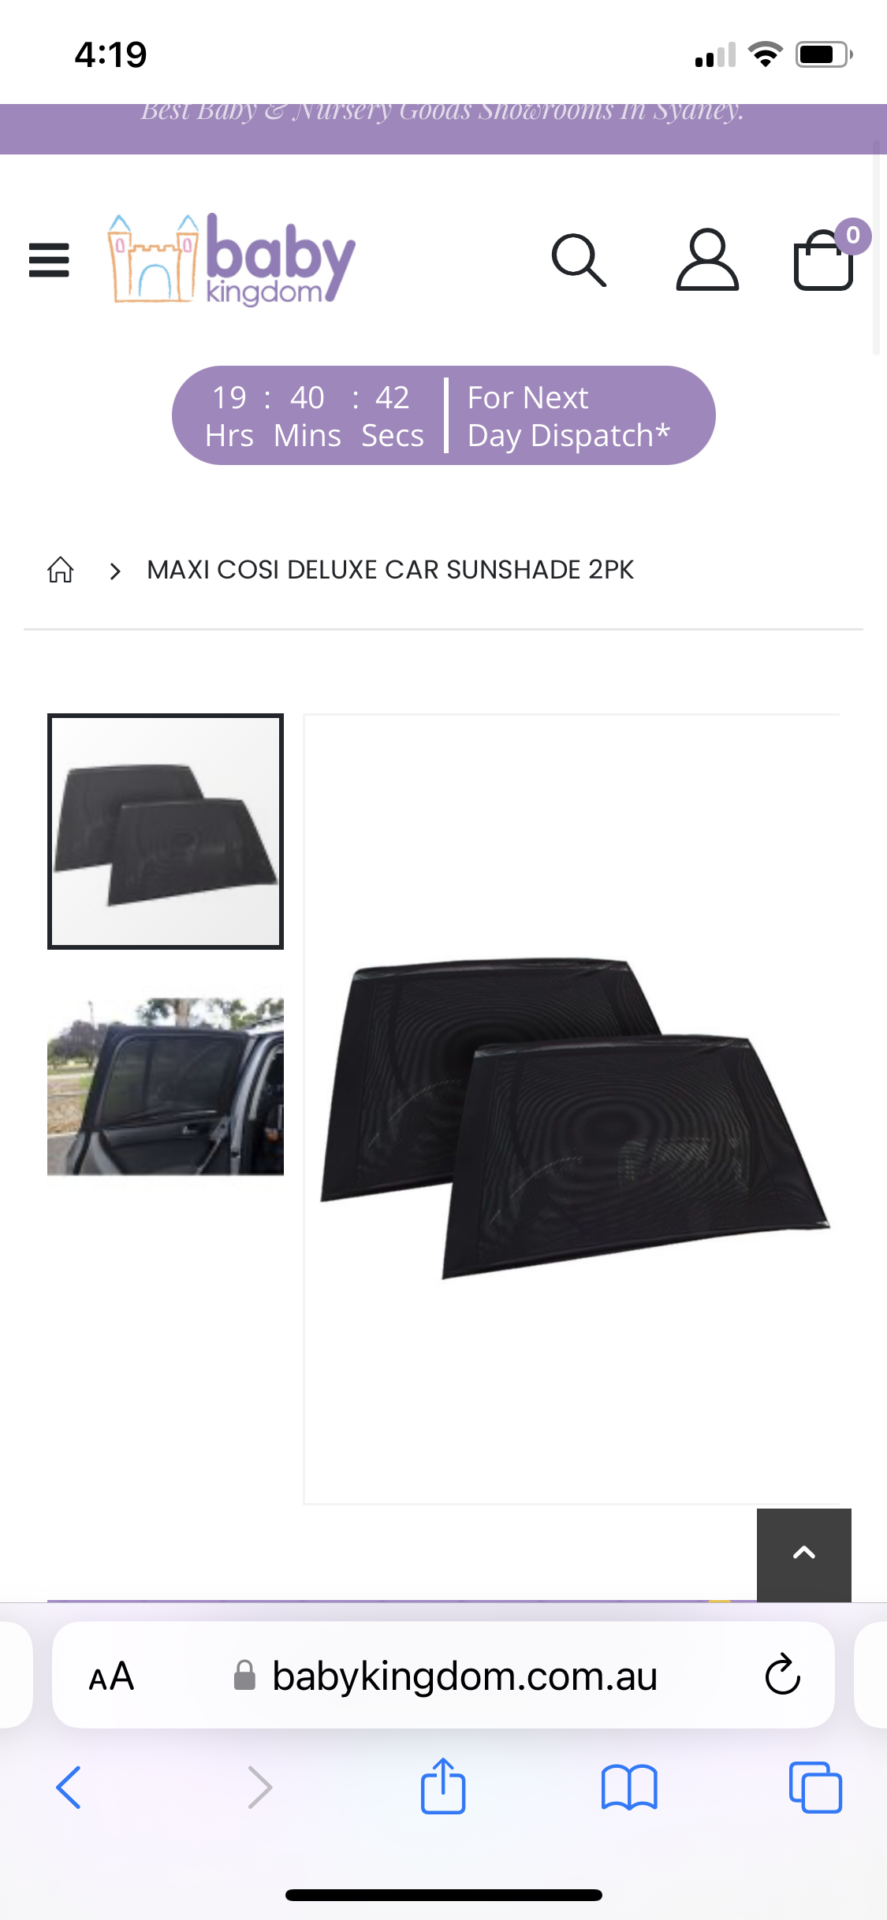 Maxi Cosi Deluxe Car Sunshade 2Pk